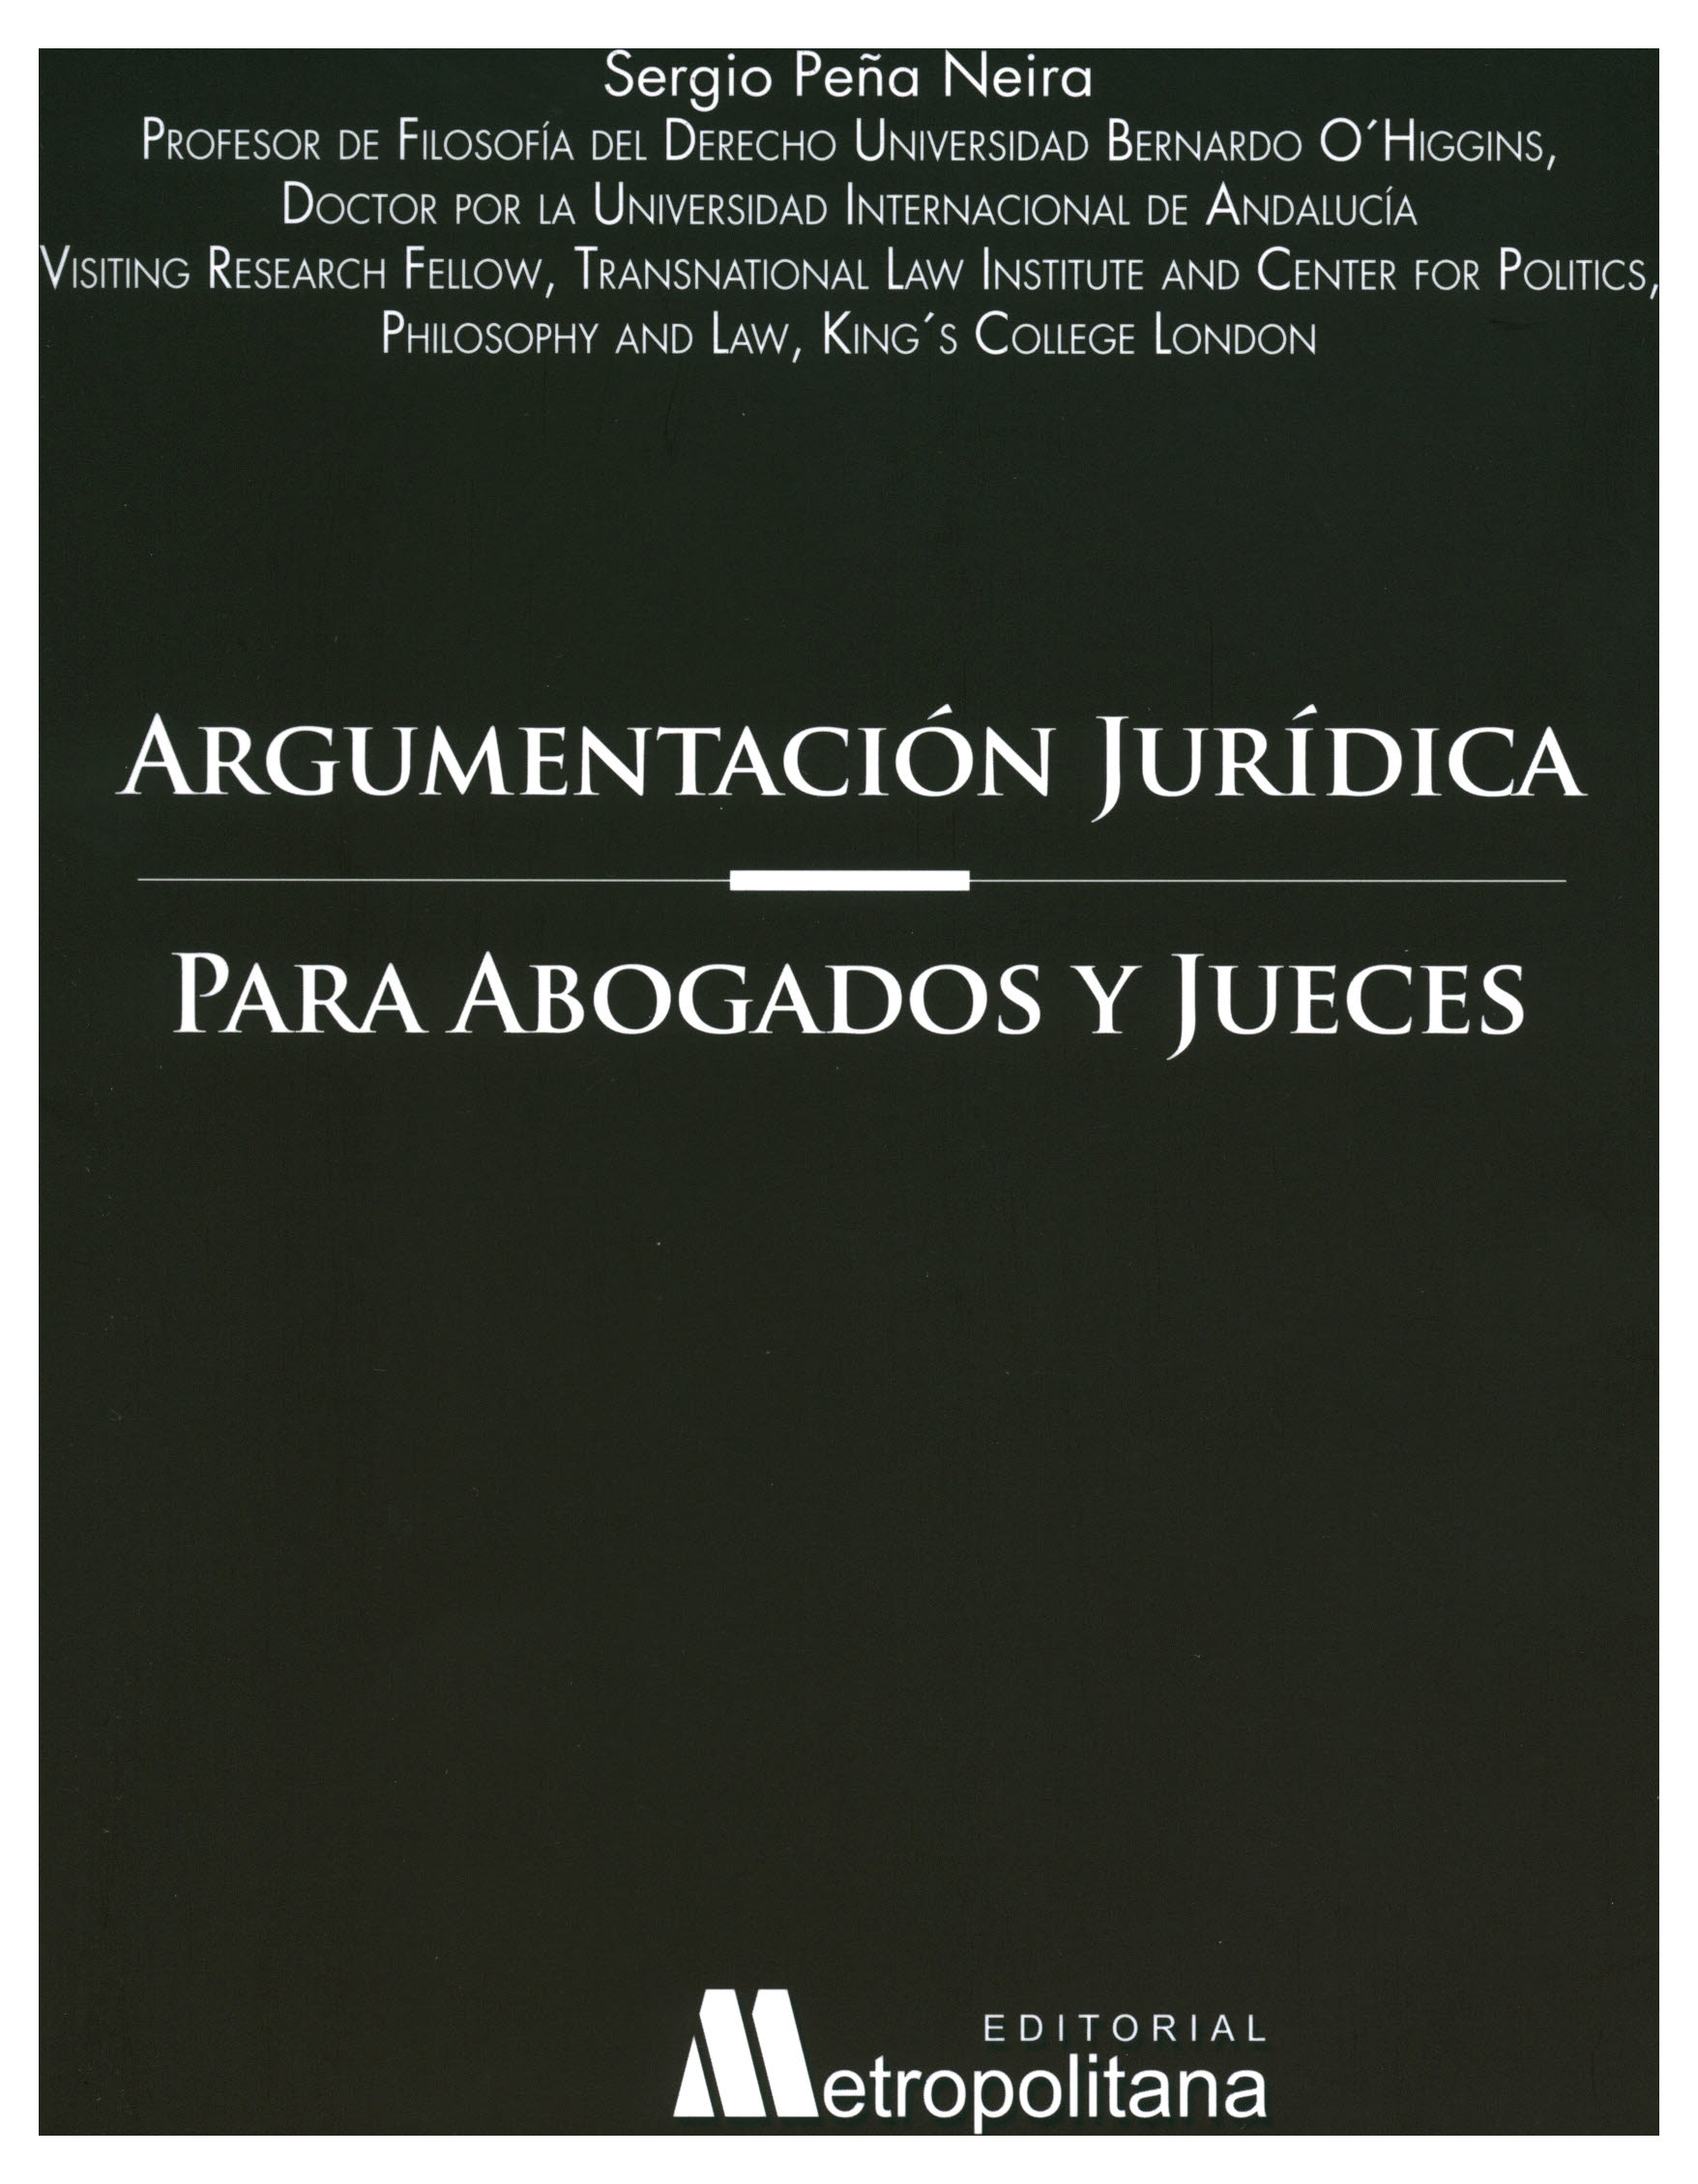 Argumentación jurídica para abogados y jueces ( Elementos de razonamiento jurídico)